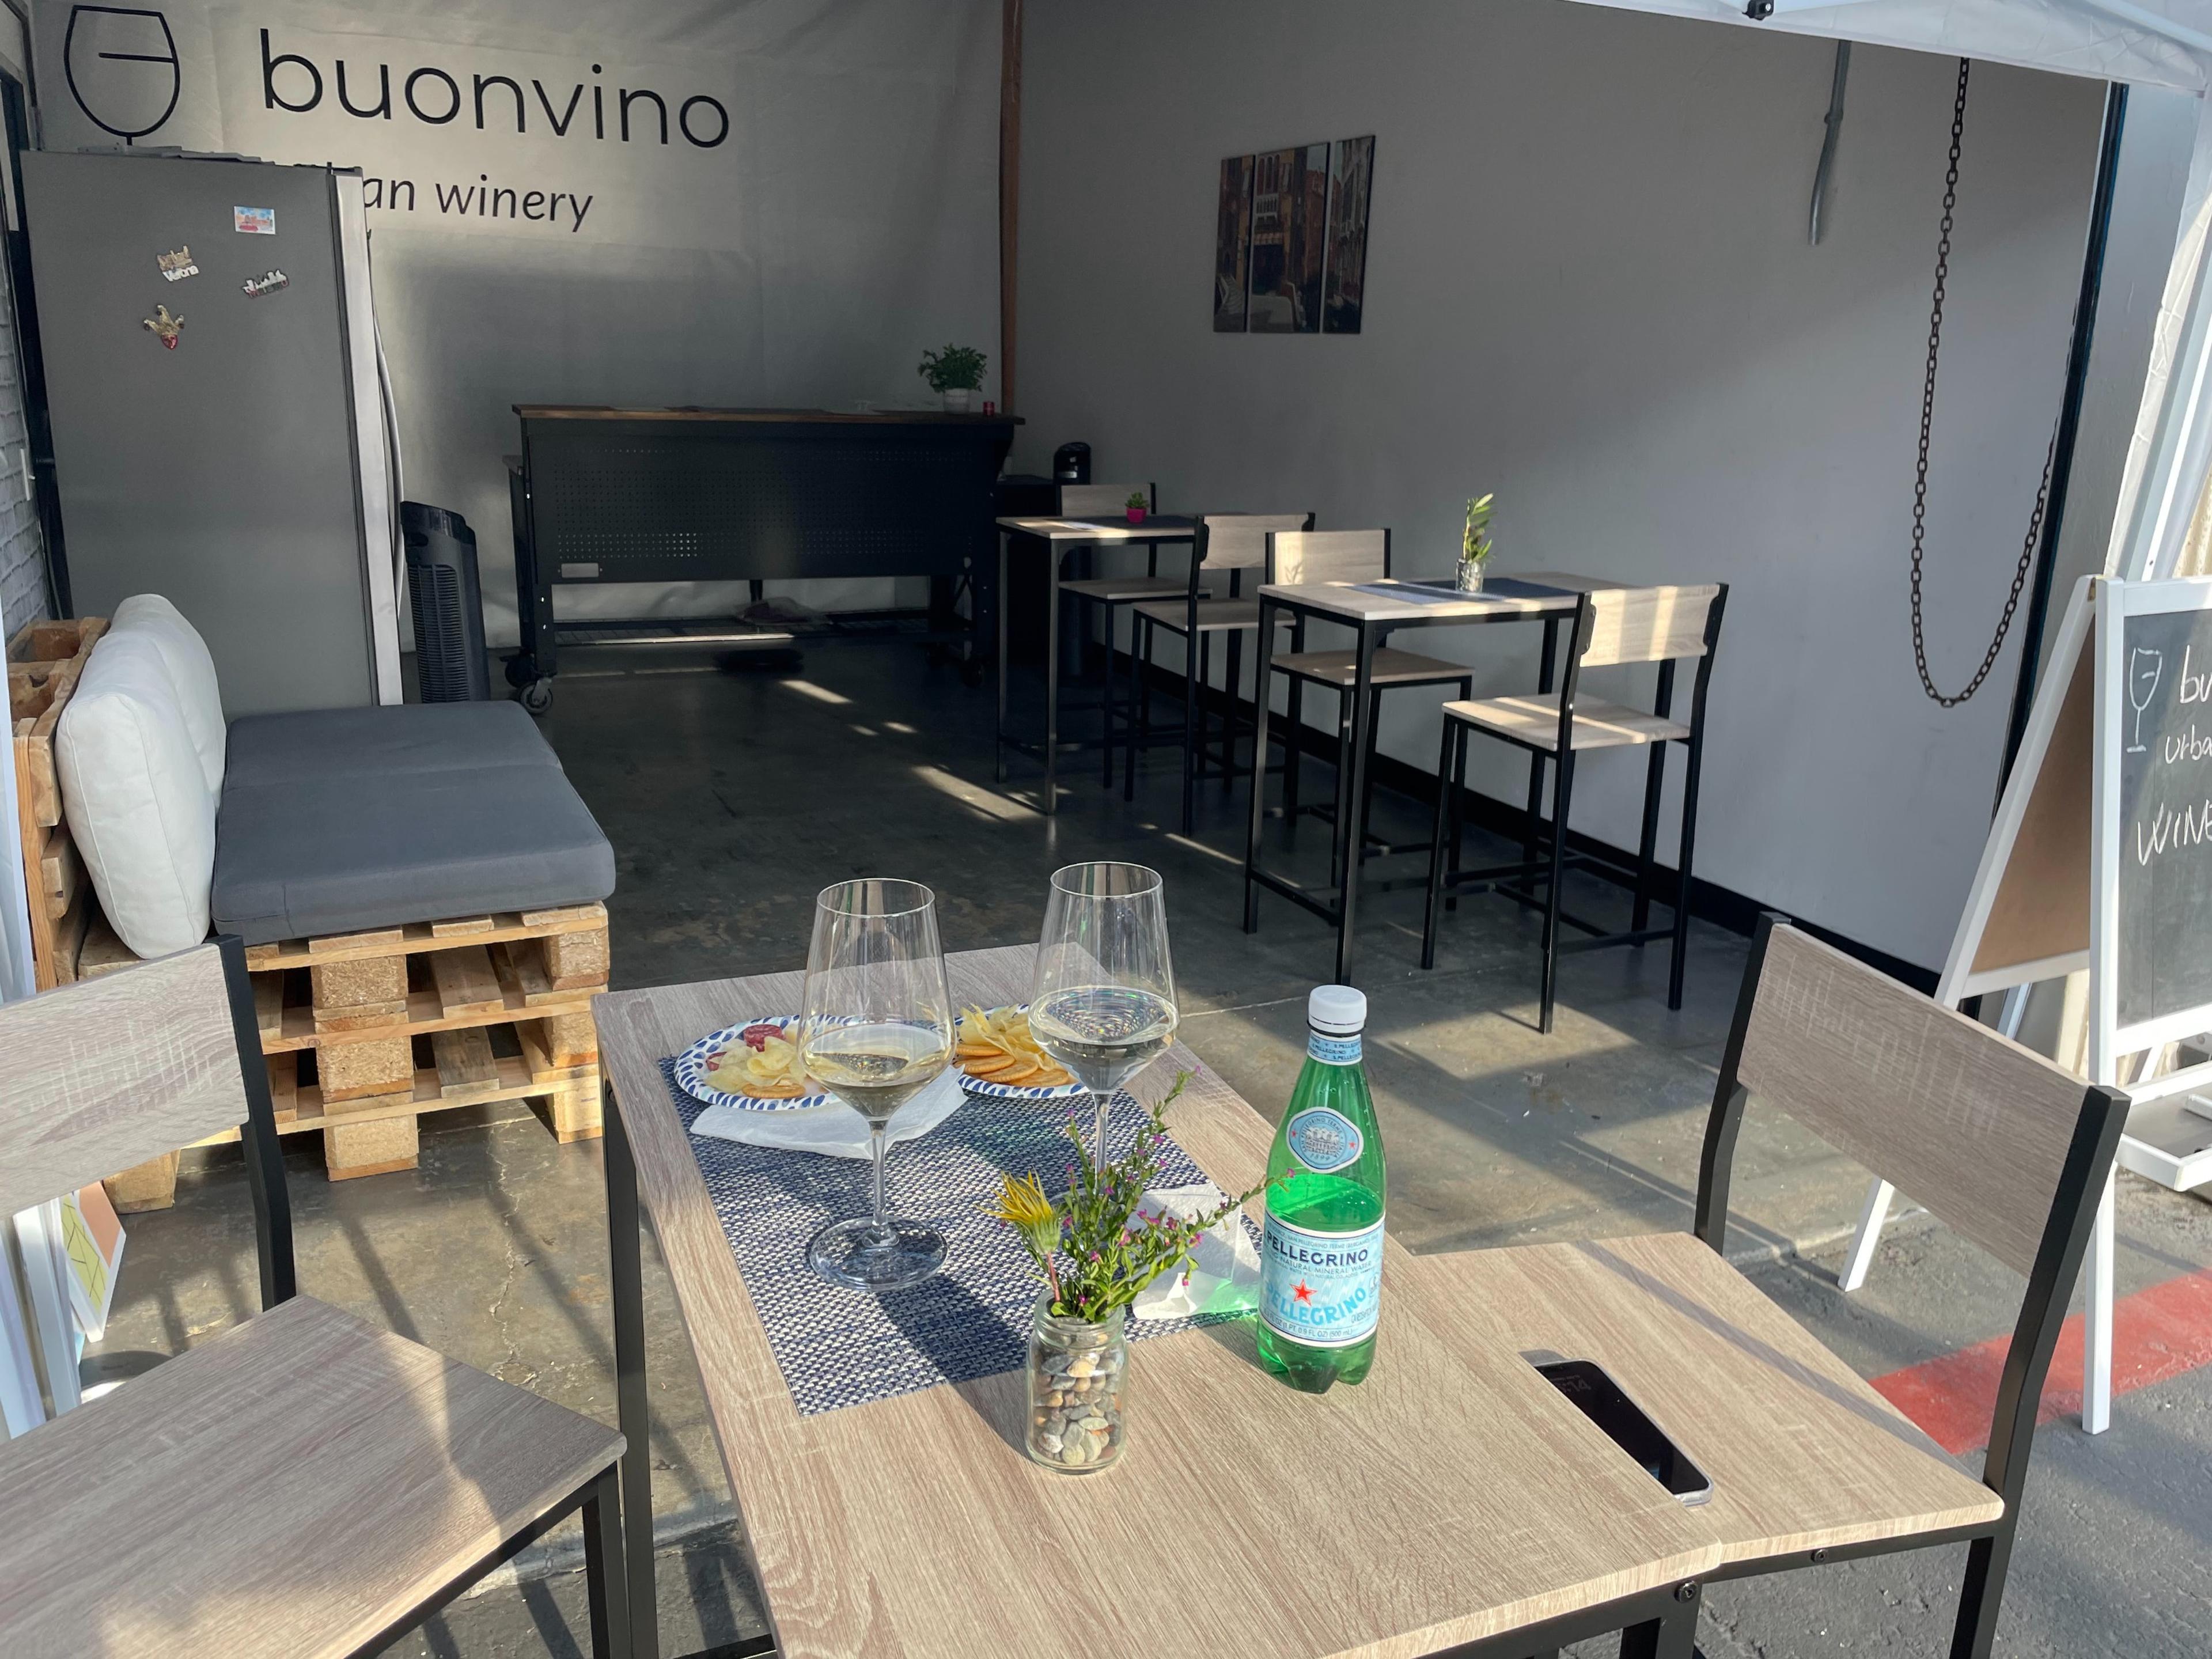 Buonvino Urban Winery